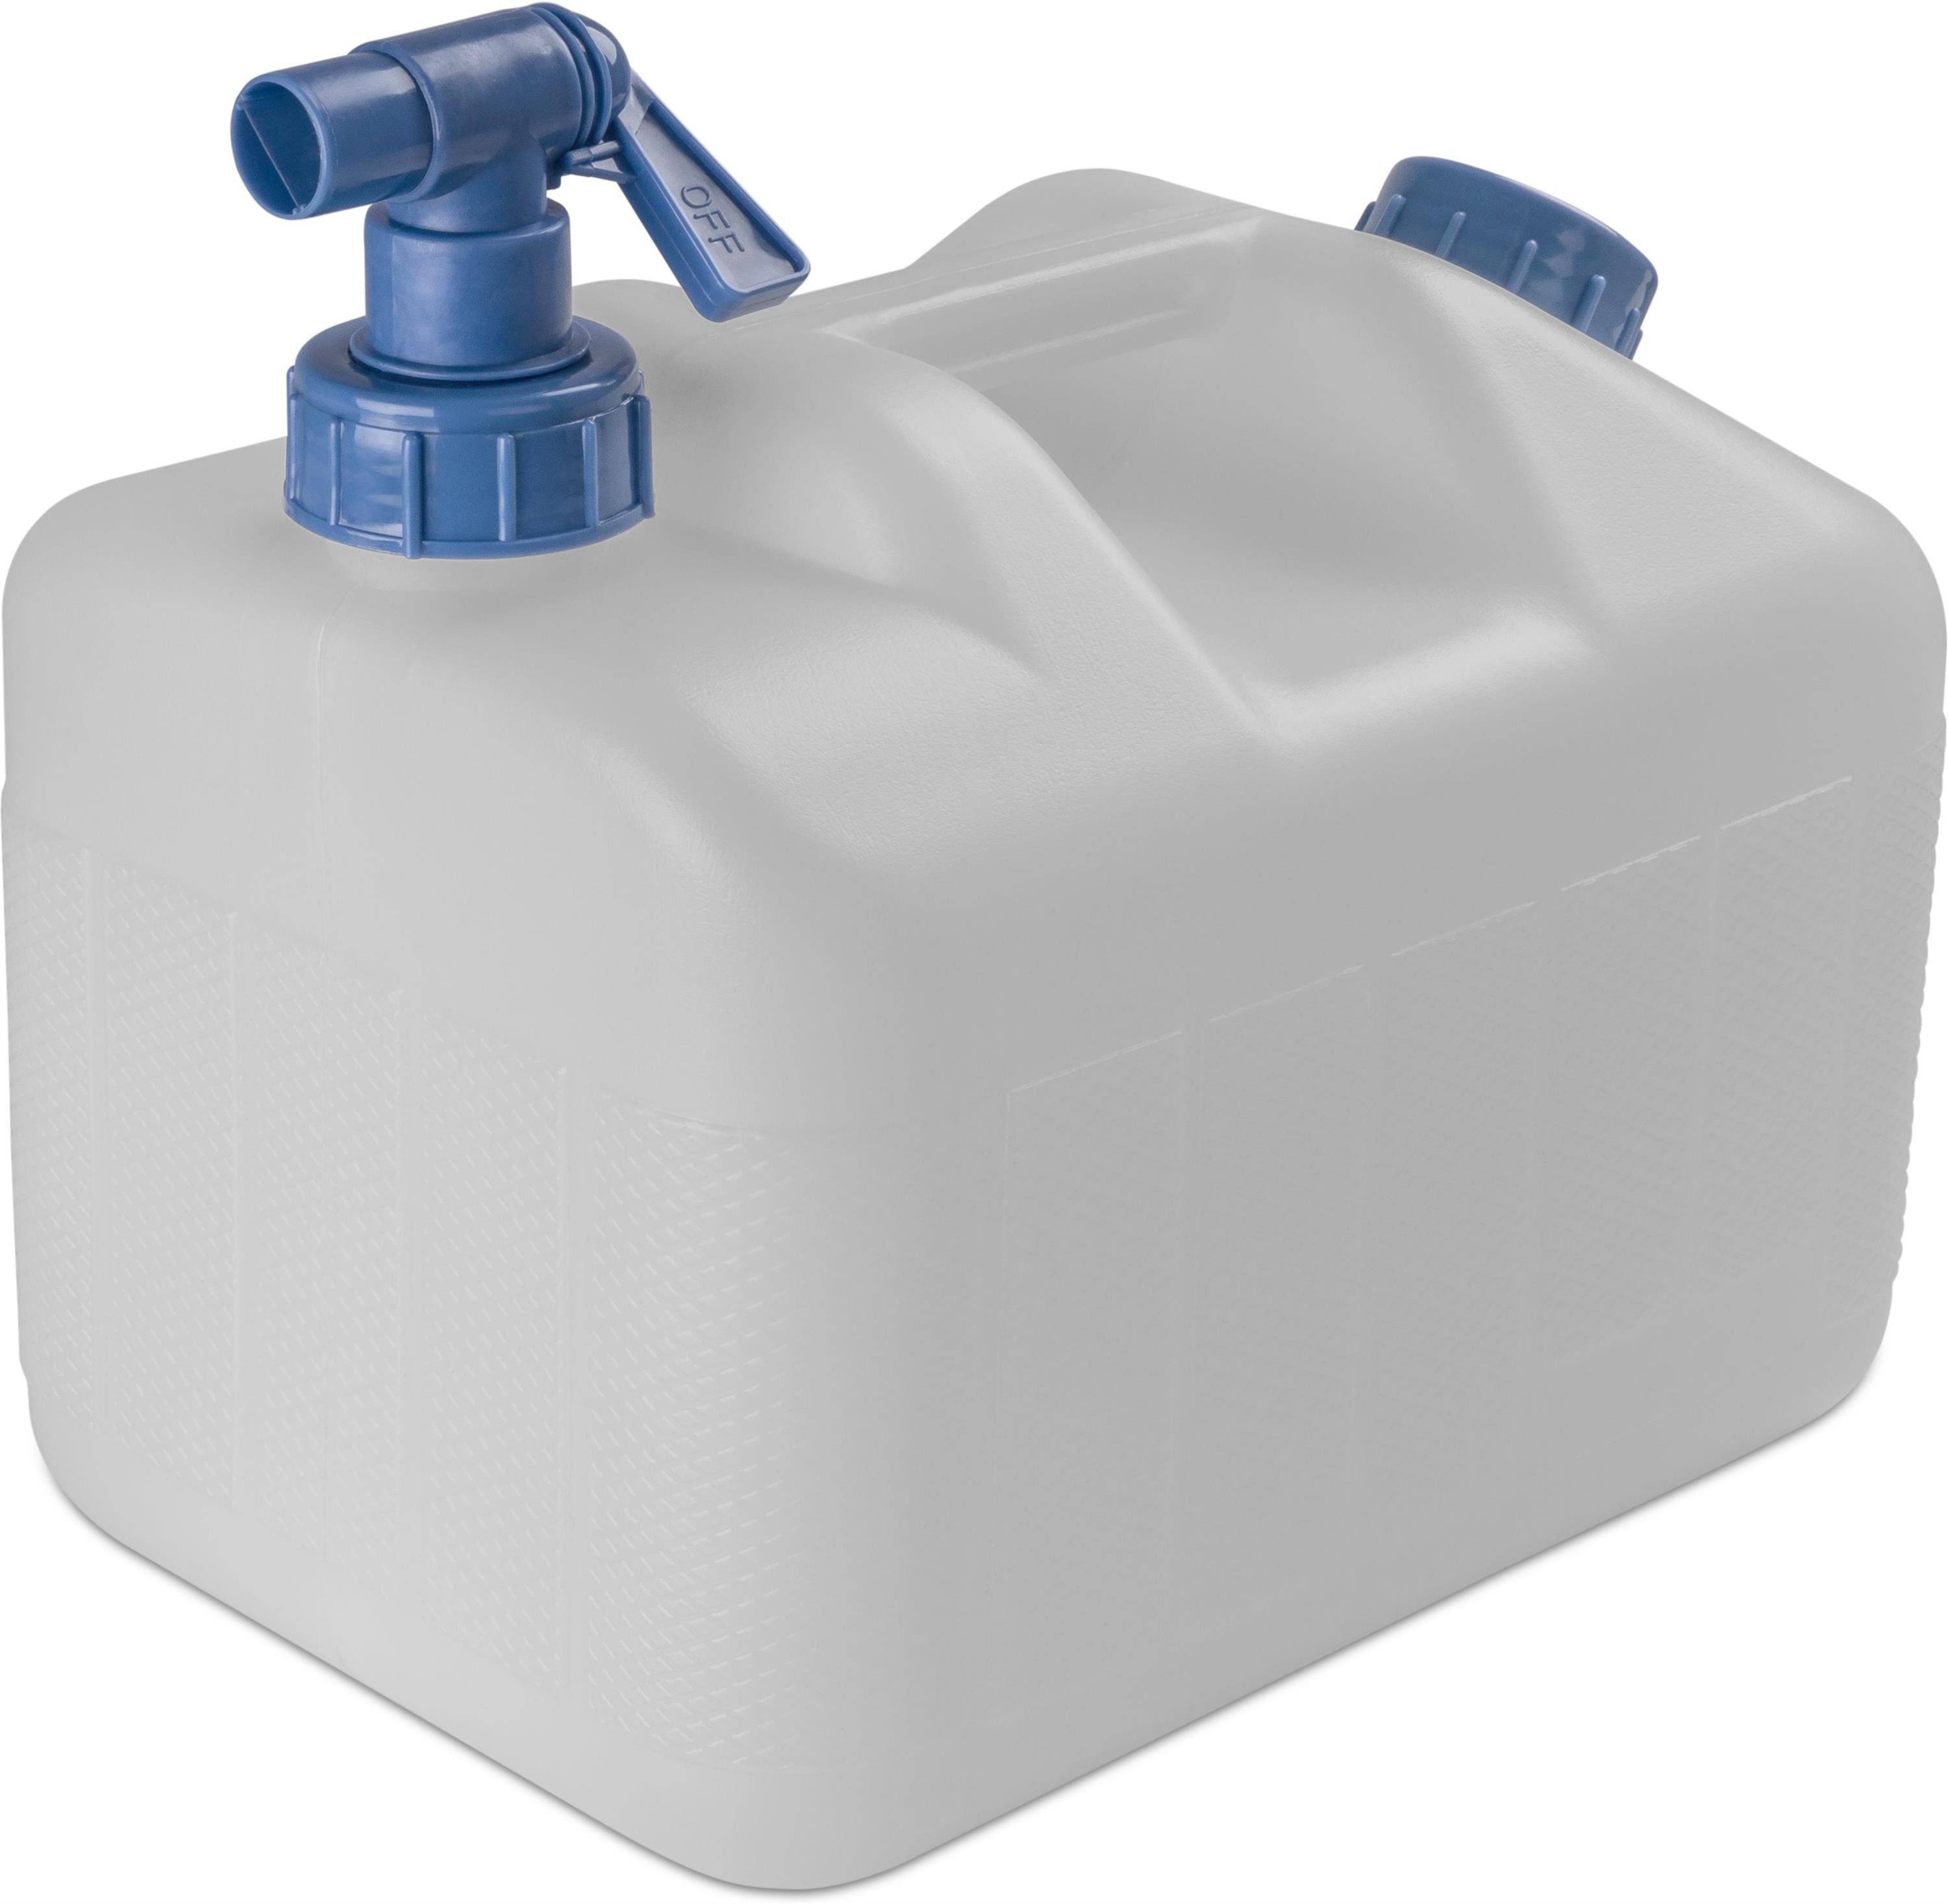 Wasserkanister mit Hahn online kaufen